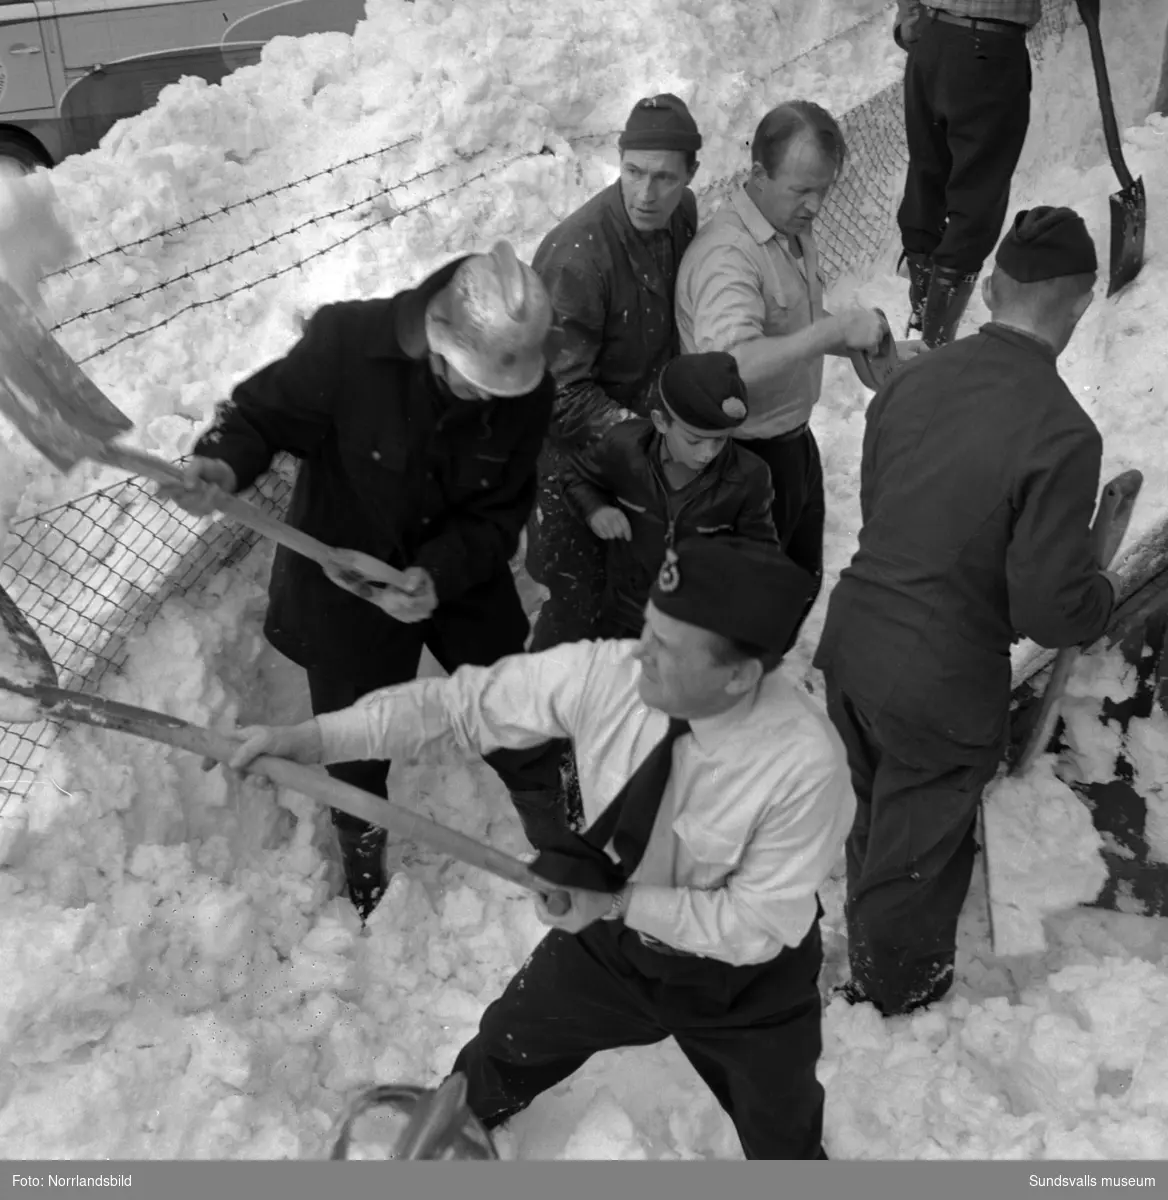 Tung blötsnö har rasat från Tennishallens tak i april 1959. Fyra lekande småpojkar hamnade under snön men tack vare en snabb insats av förbipasserande, personal från Bäckströms billackeringsfirma i grannfastigheten samt snabbt inkallat brandmanskap så grävdes pojkarna fram oskadda. På bild 2 ses längst fram brandmannen Algot Kamlind, i mitten av bilden en av de räddade pojkarna, tioårige Jan Granholm. Längst bak syns Idrottsparkens vaktmästare Norrbomsamt brandman Sven Nilsson. På bild 3 de framgrävda pojkarna Jan Granholm och Kent Sjödin,. åtta år, mannen mellan pojkarna är troligen Kents pappa Ivar Sjödin.